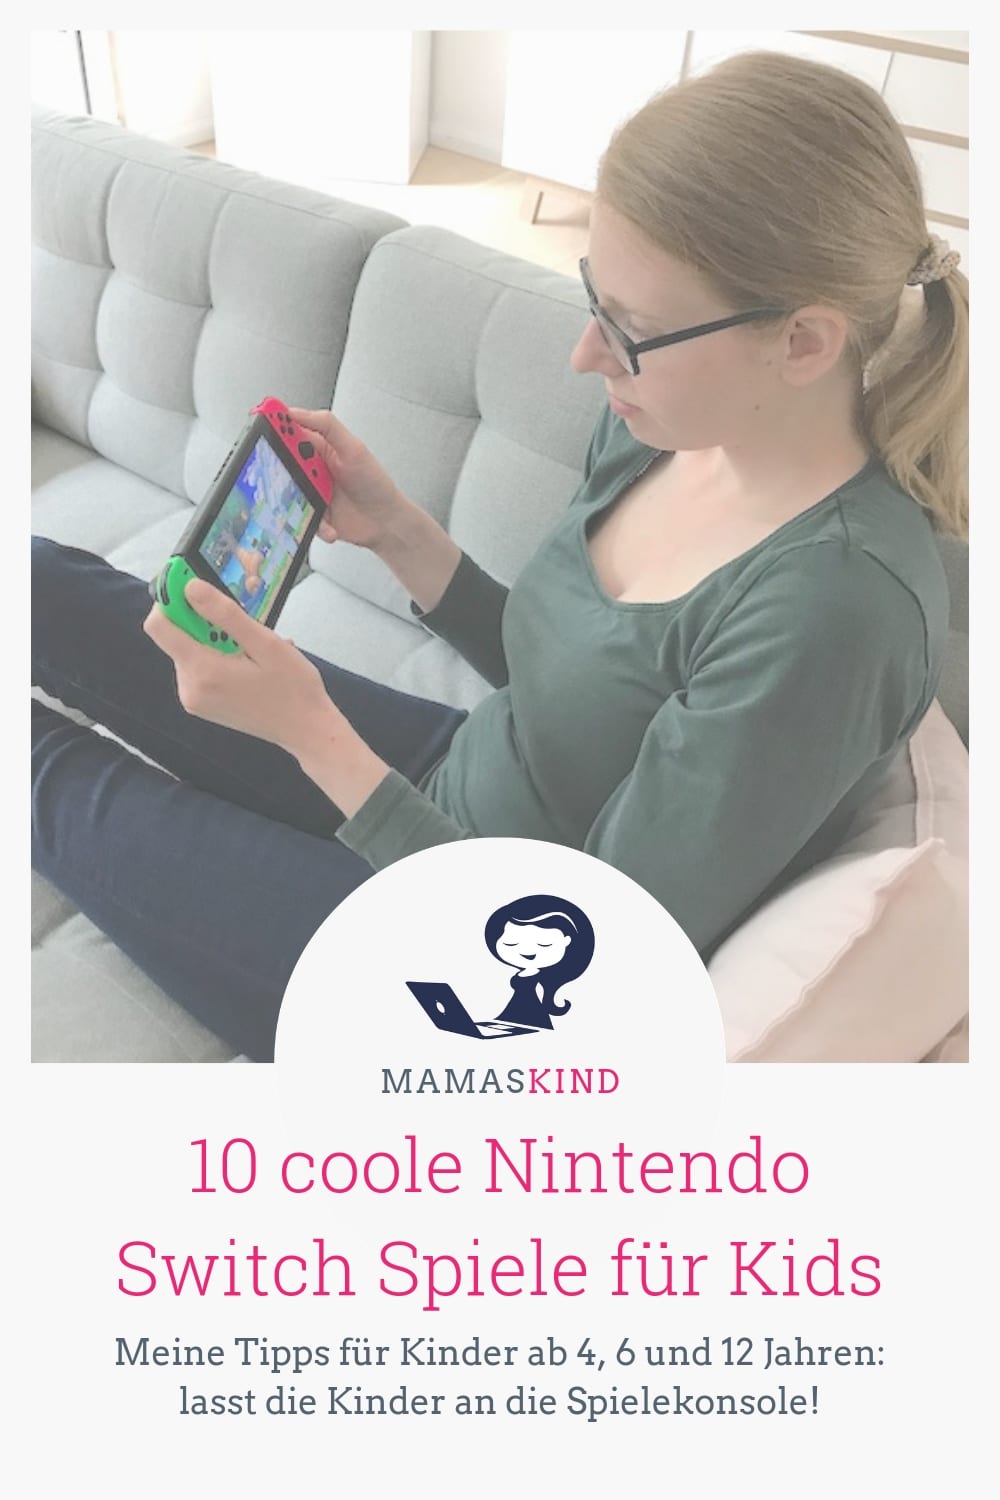 10 coole Nintendo Switch Spiele für Kids - ran an die Spielekonsole! | Ich helfe gerne bei der Kaufentscheidung: Welches Nintendo Switch Spiel soll ich meinem Kind kaufen? Spiele für Kinder ab 4, 6 und 12 Jahren auf dem Blog mamaskind.de